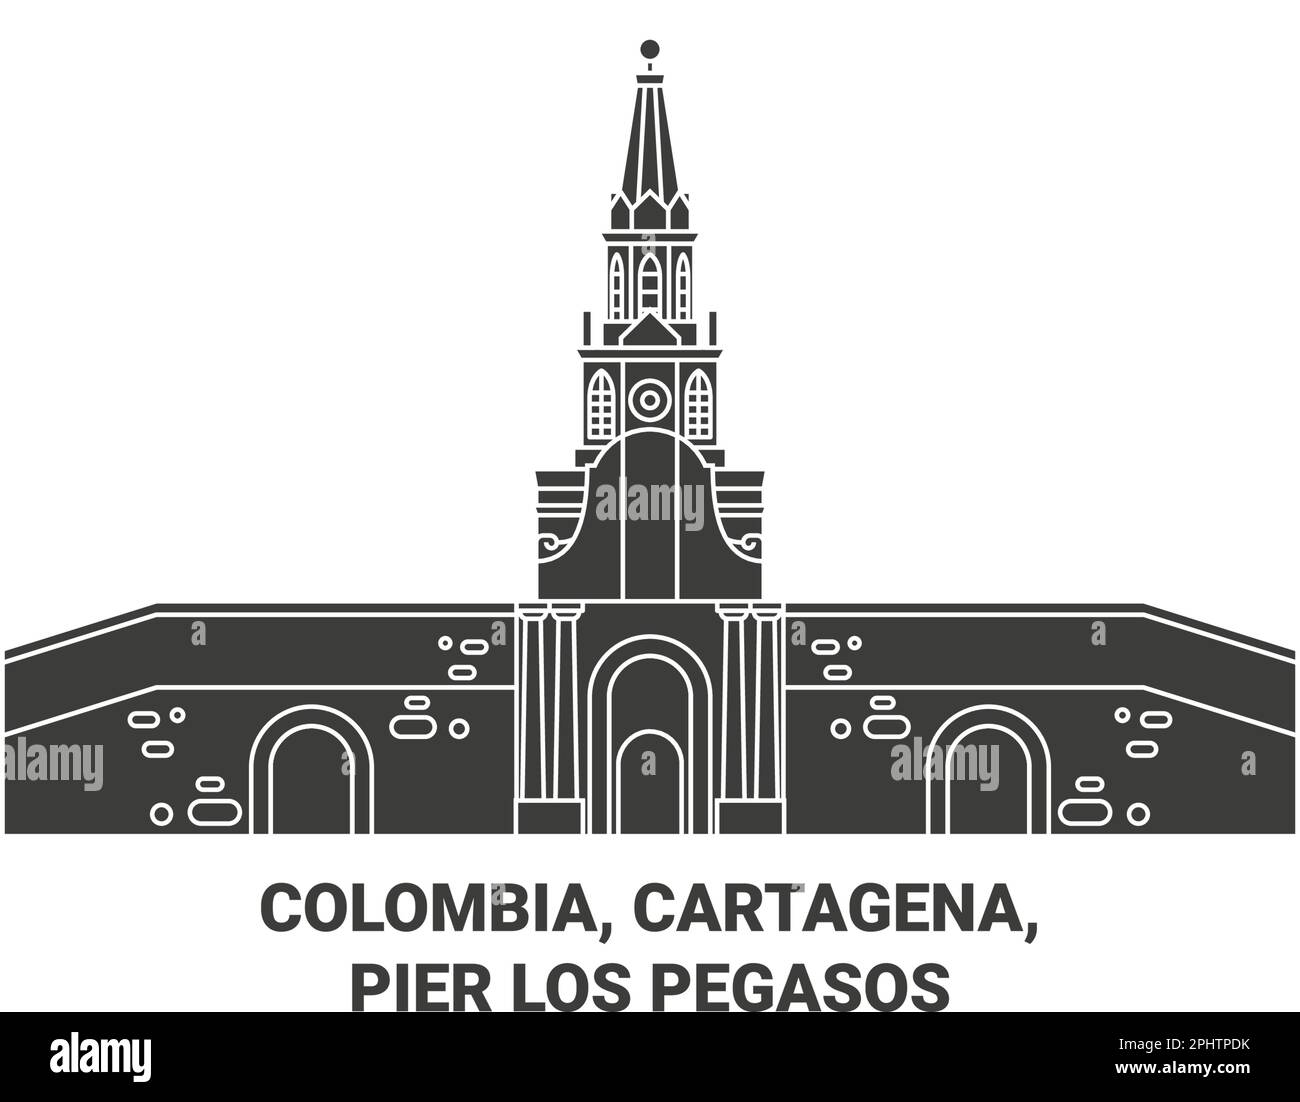 Colombia, Cartagena, Pier Los Pegasos travel landmark vector illustration Stock Vector